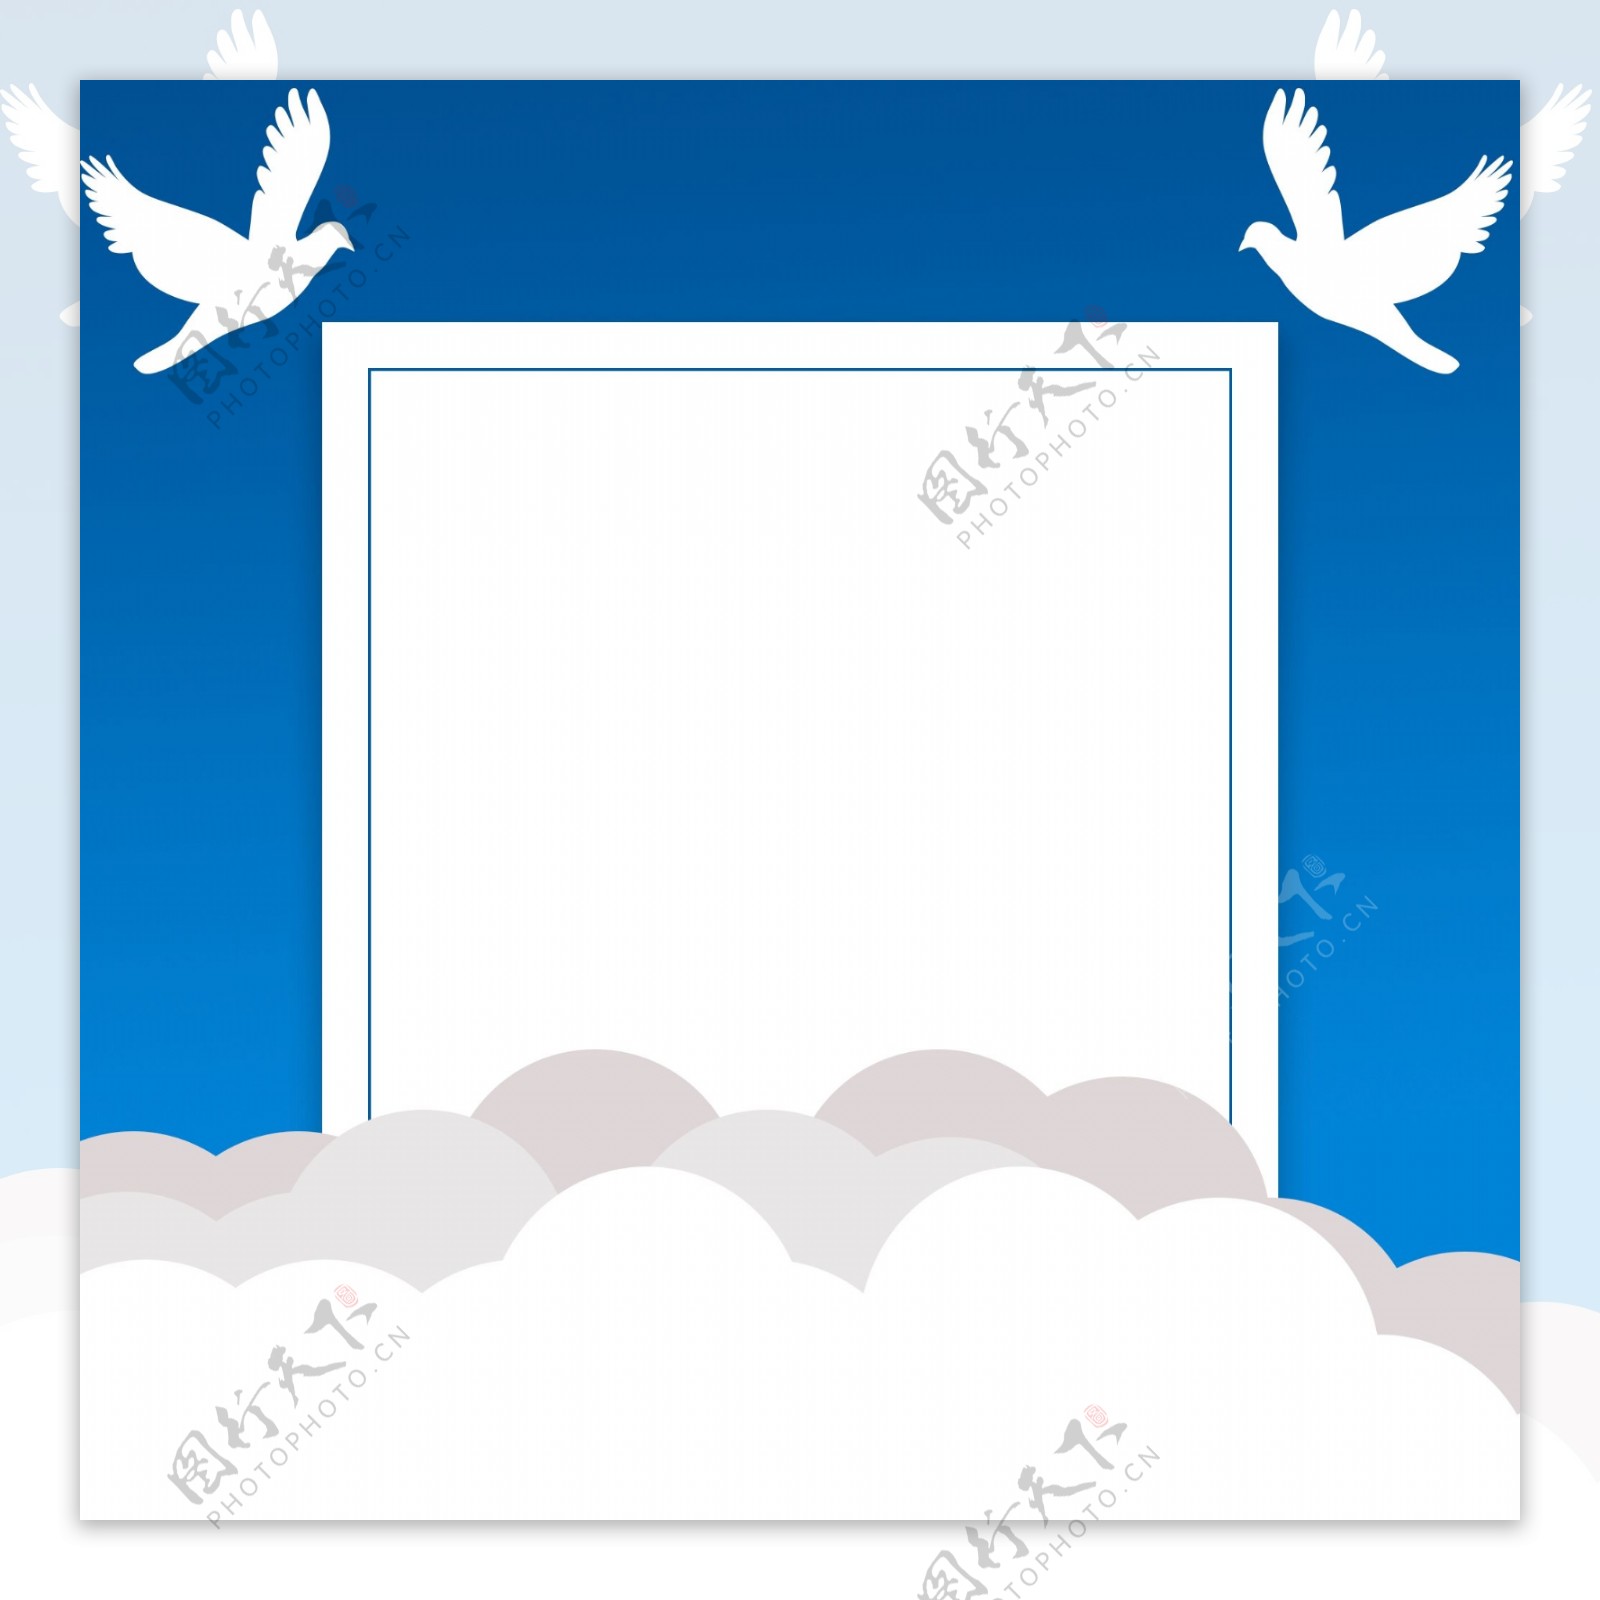 世界和平日蓝天白鸽背景素材图